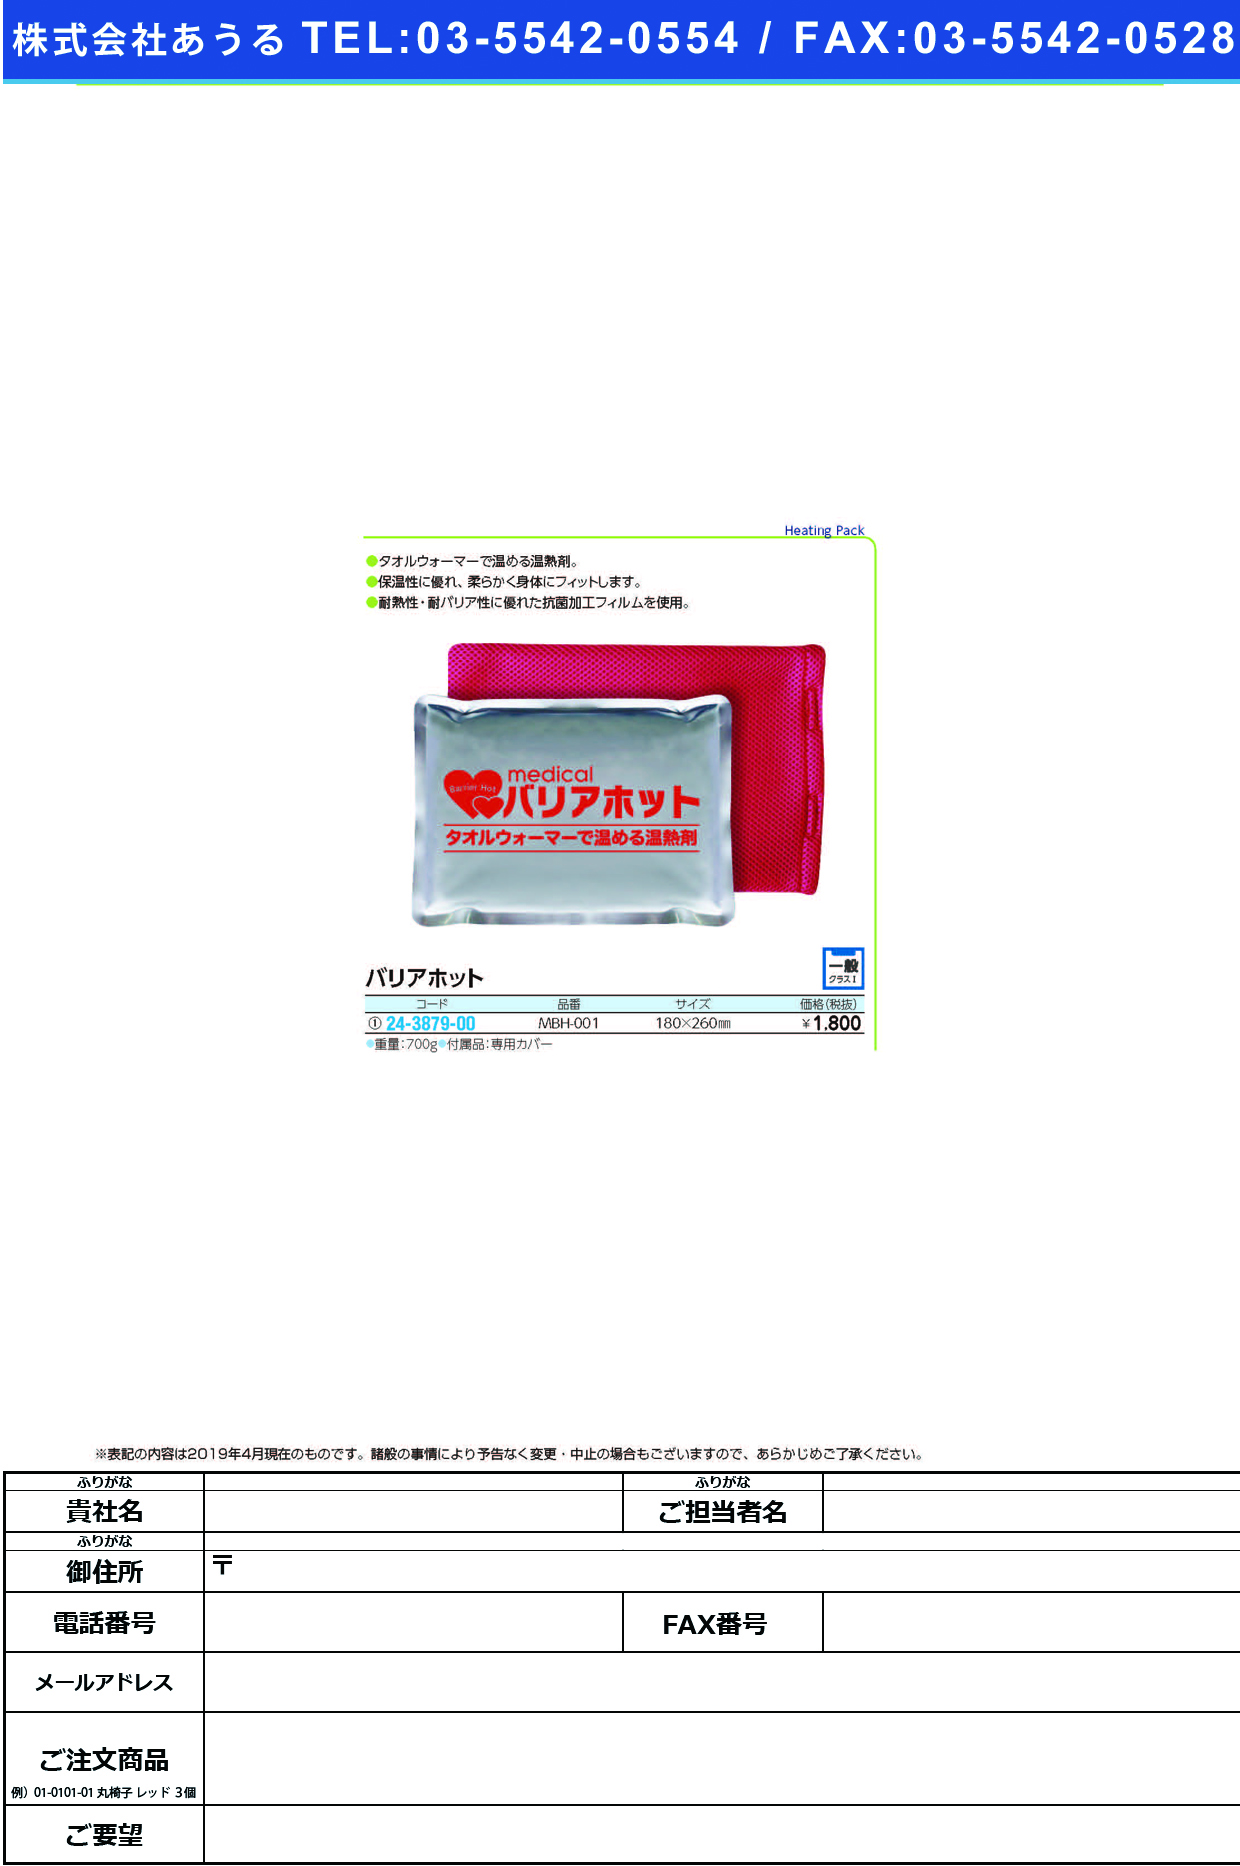 (24-3879-00)バリアホット（カバー付） MBH-001(180X260MM) ﾊﾞﾘｱﾎｯﾄ【1個単位】【2019年カタログ商品】